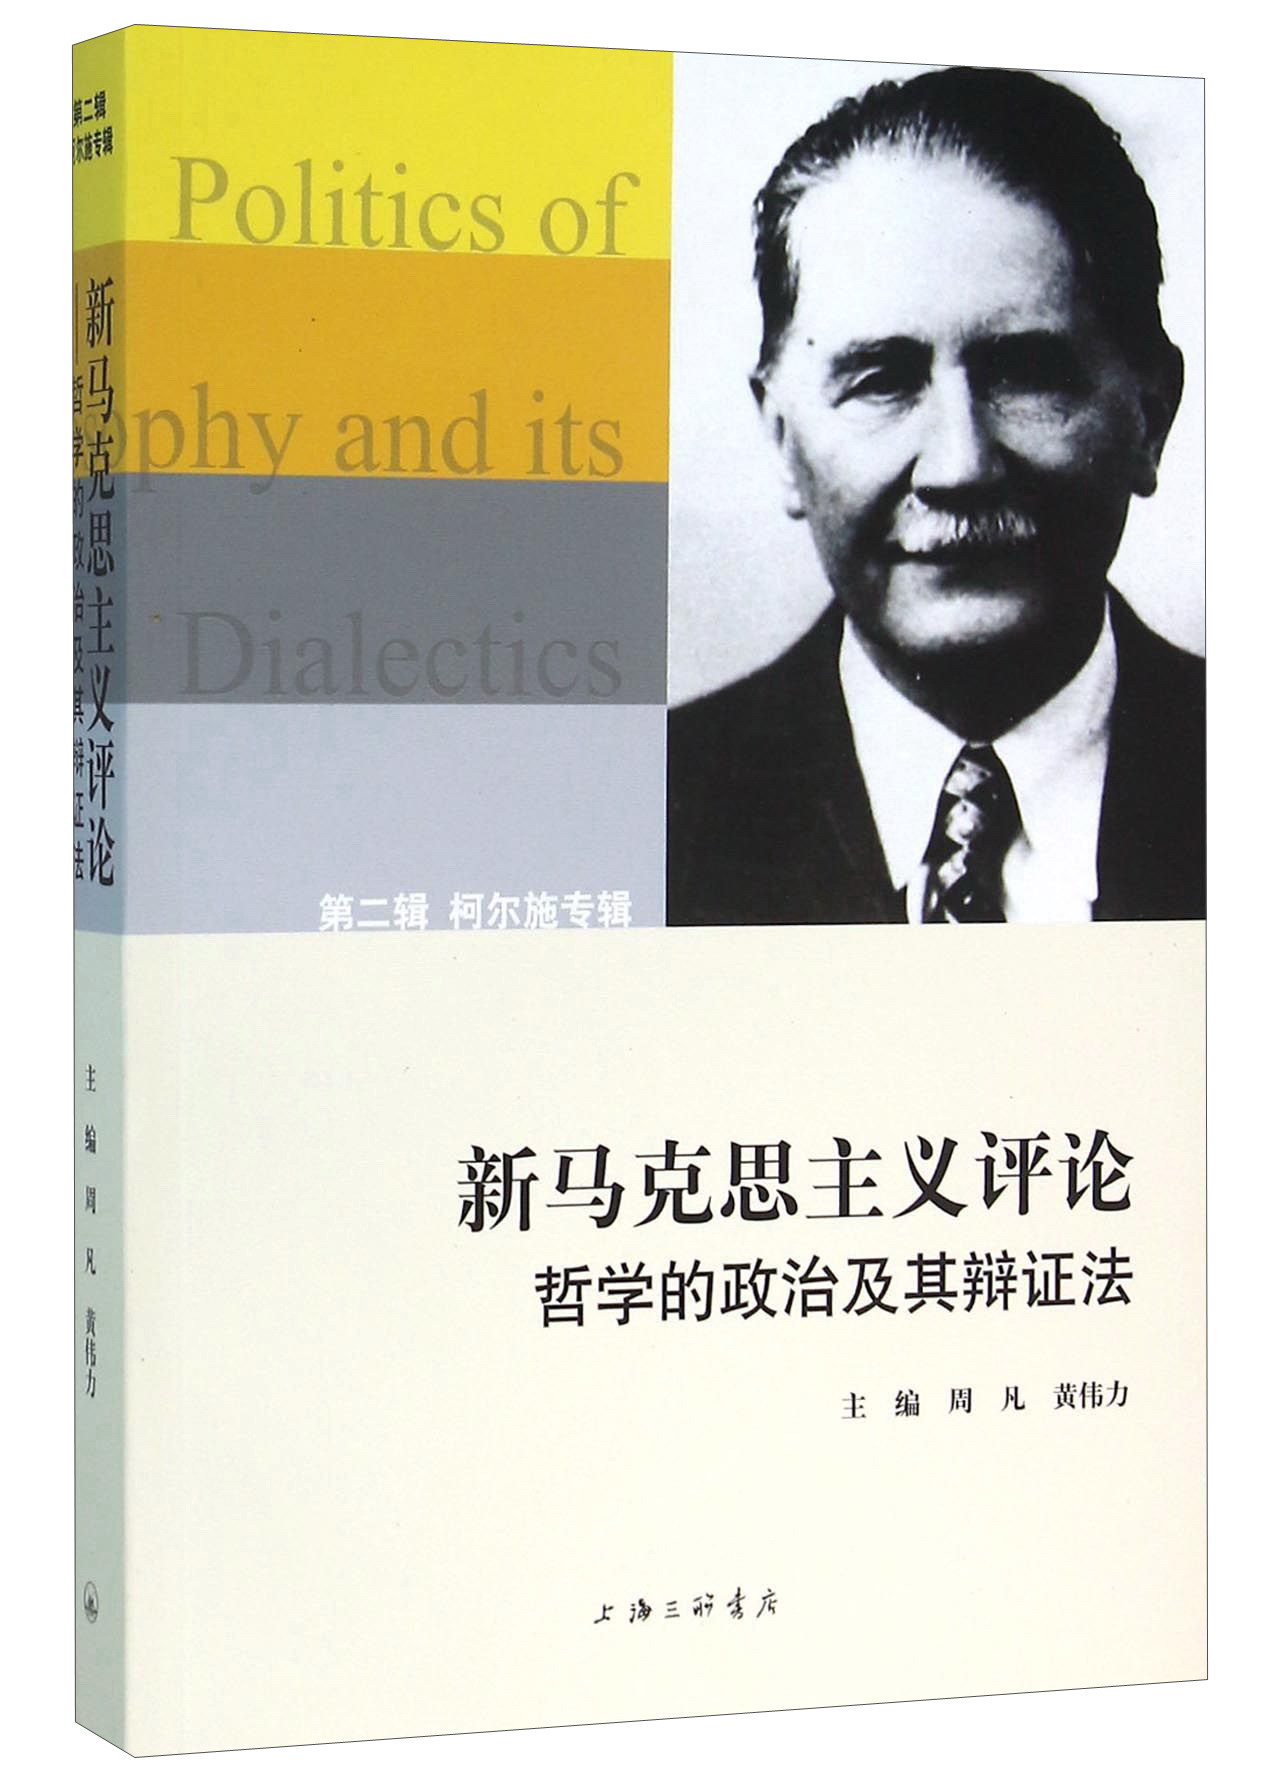 新马克思主义评论 哲学的政治及其辩证法 （第二辑） 柯尔施专辑 epub格式下载